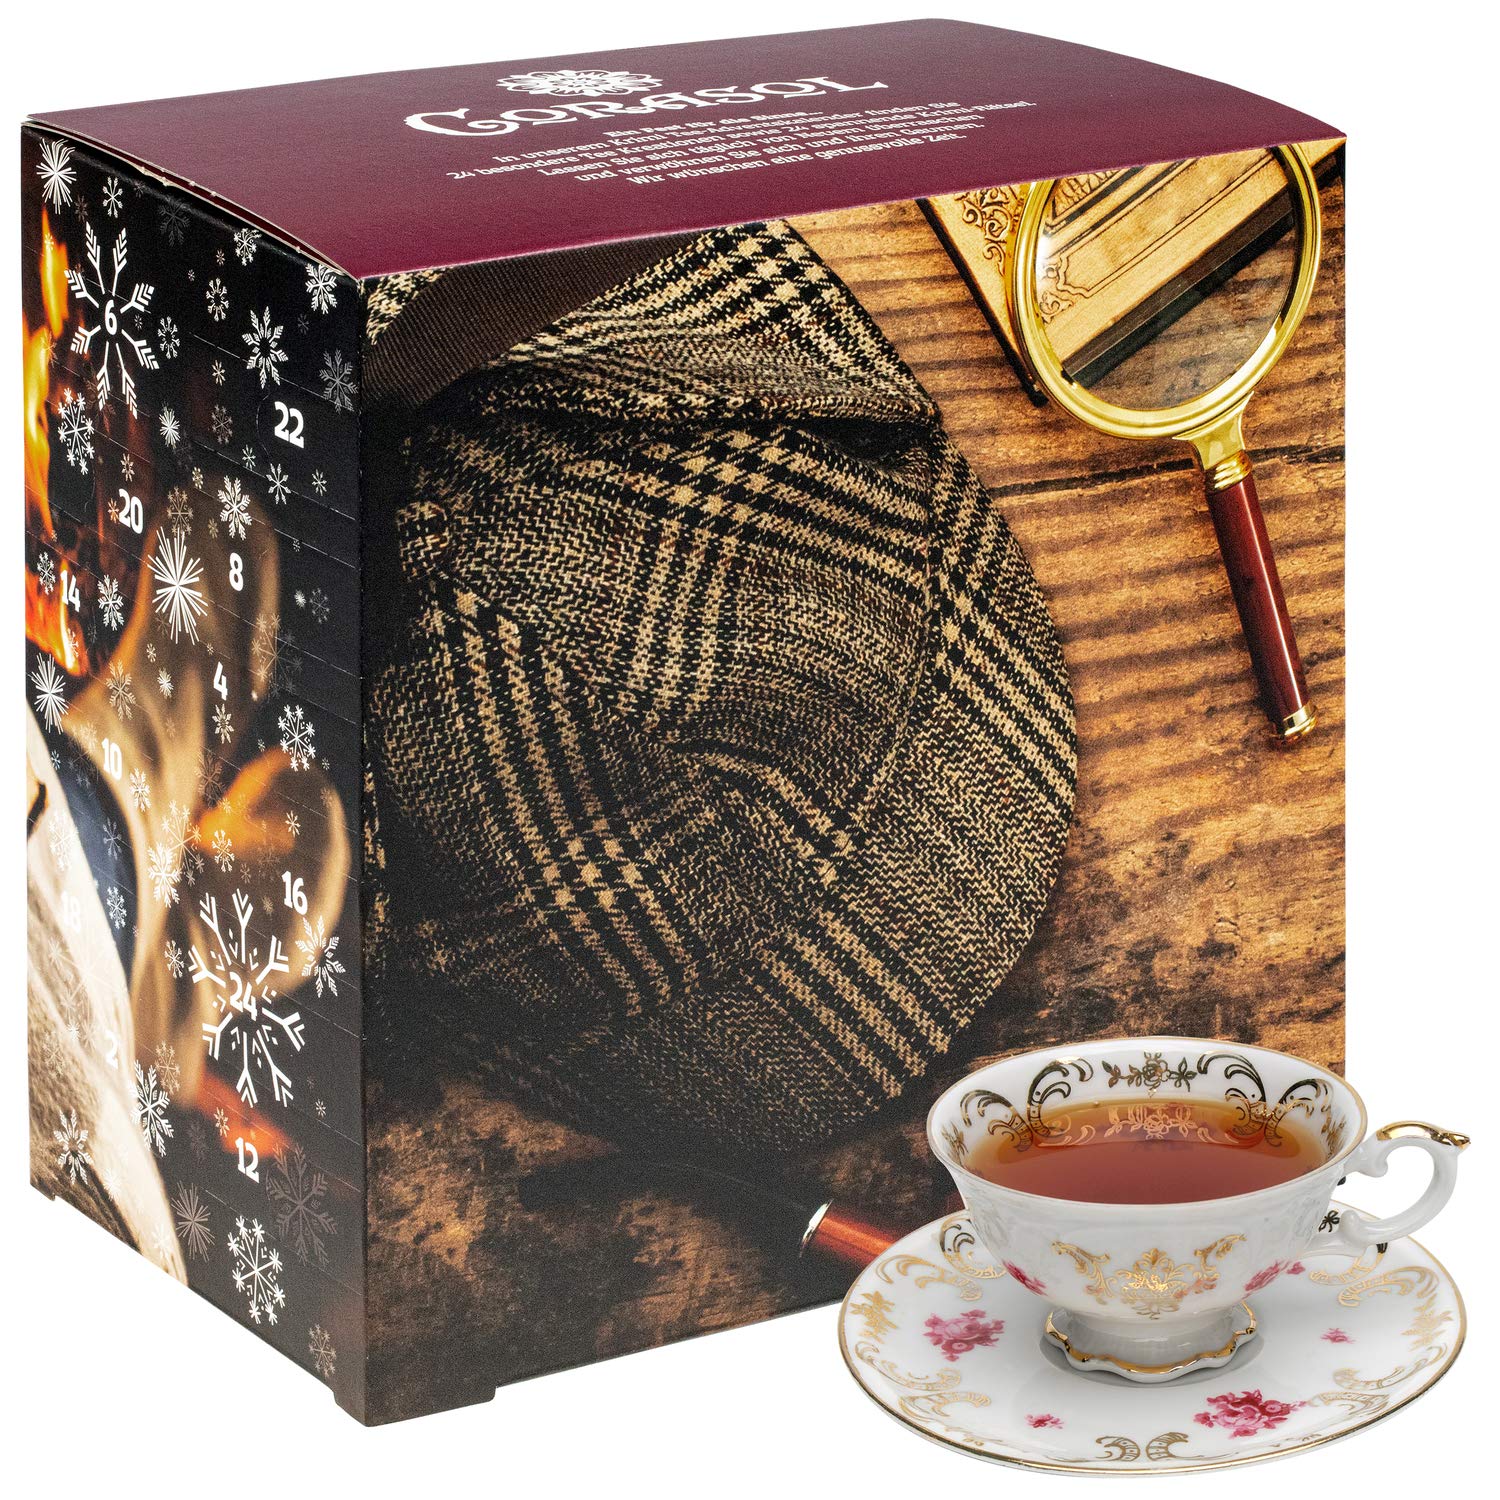 Corasol Premium Rätsel-Krimi & Tee Adventskalender 2020 mit 24 losen Teesorten & spannendem Krimi-Booklet mit 24 kniffligen Rätseln